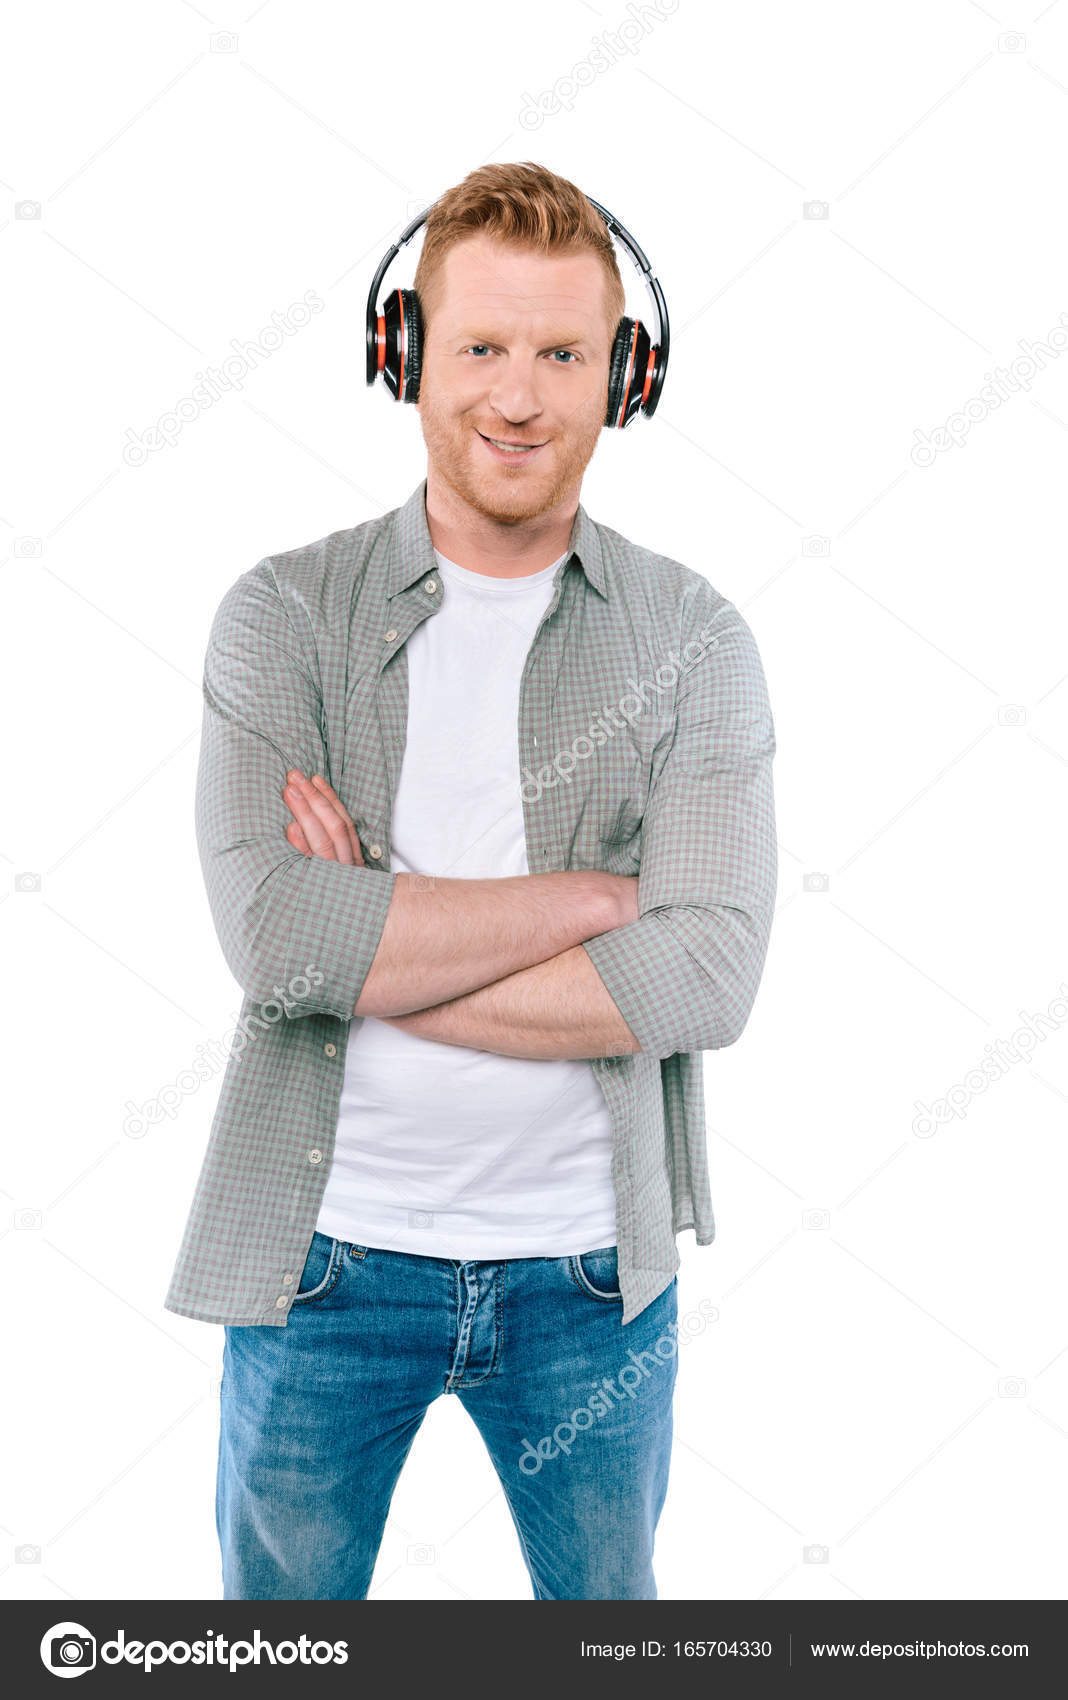 Man die muziek luistert met een — Gratis stockfoto © IgorVetushko